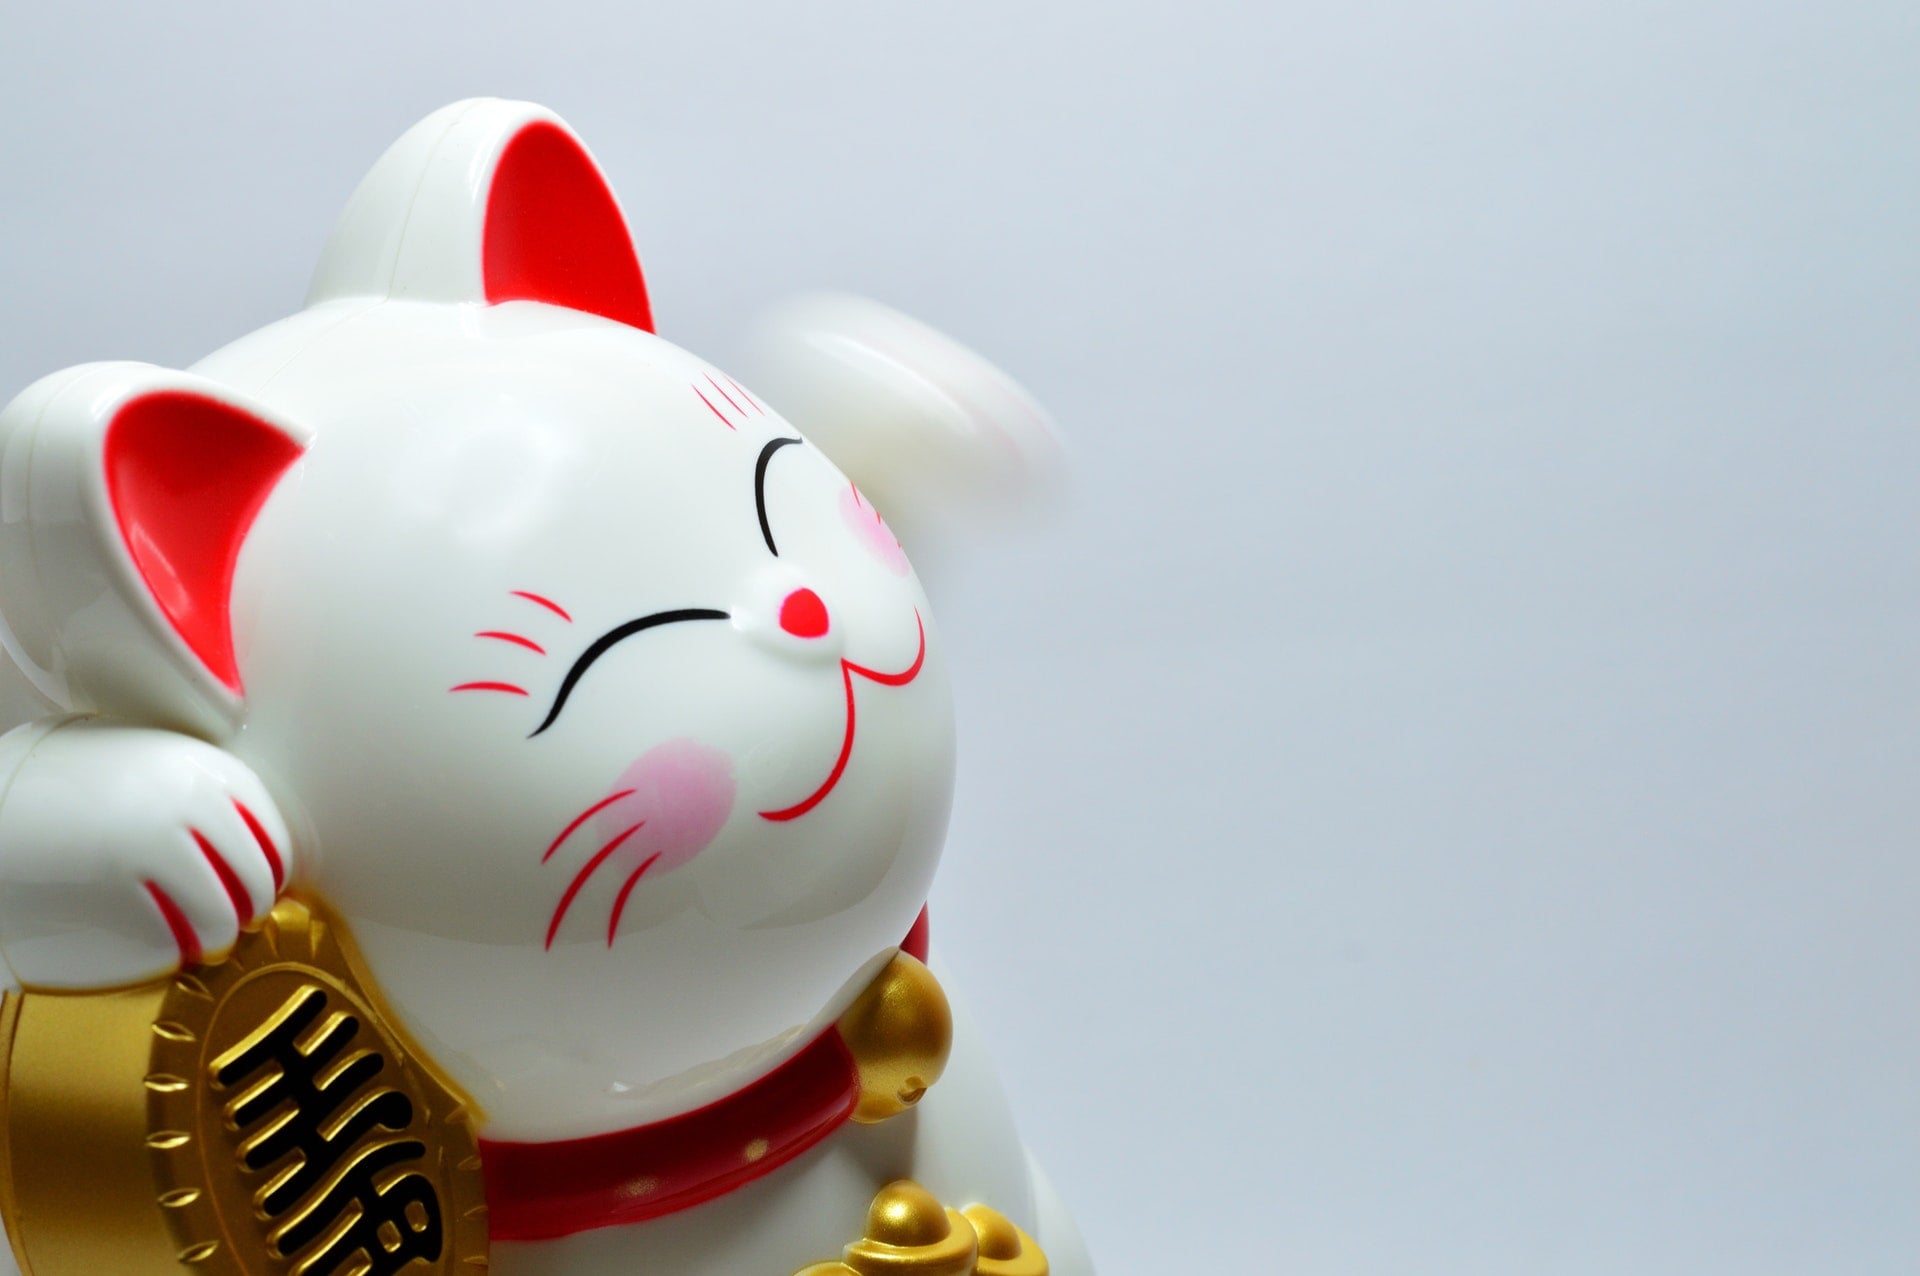 民國 108 年 7、8 月統一發票號碼中獎號碼、獎金兌獎說明 2019 japanese lucky coin cat